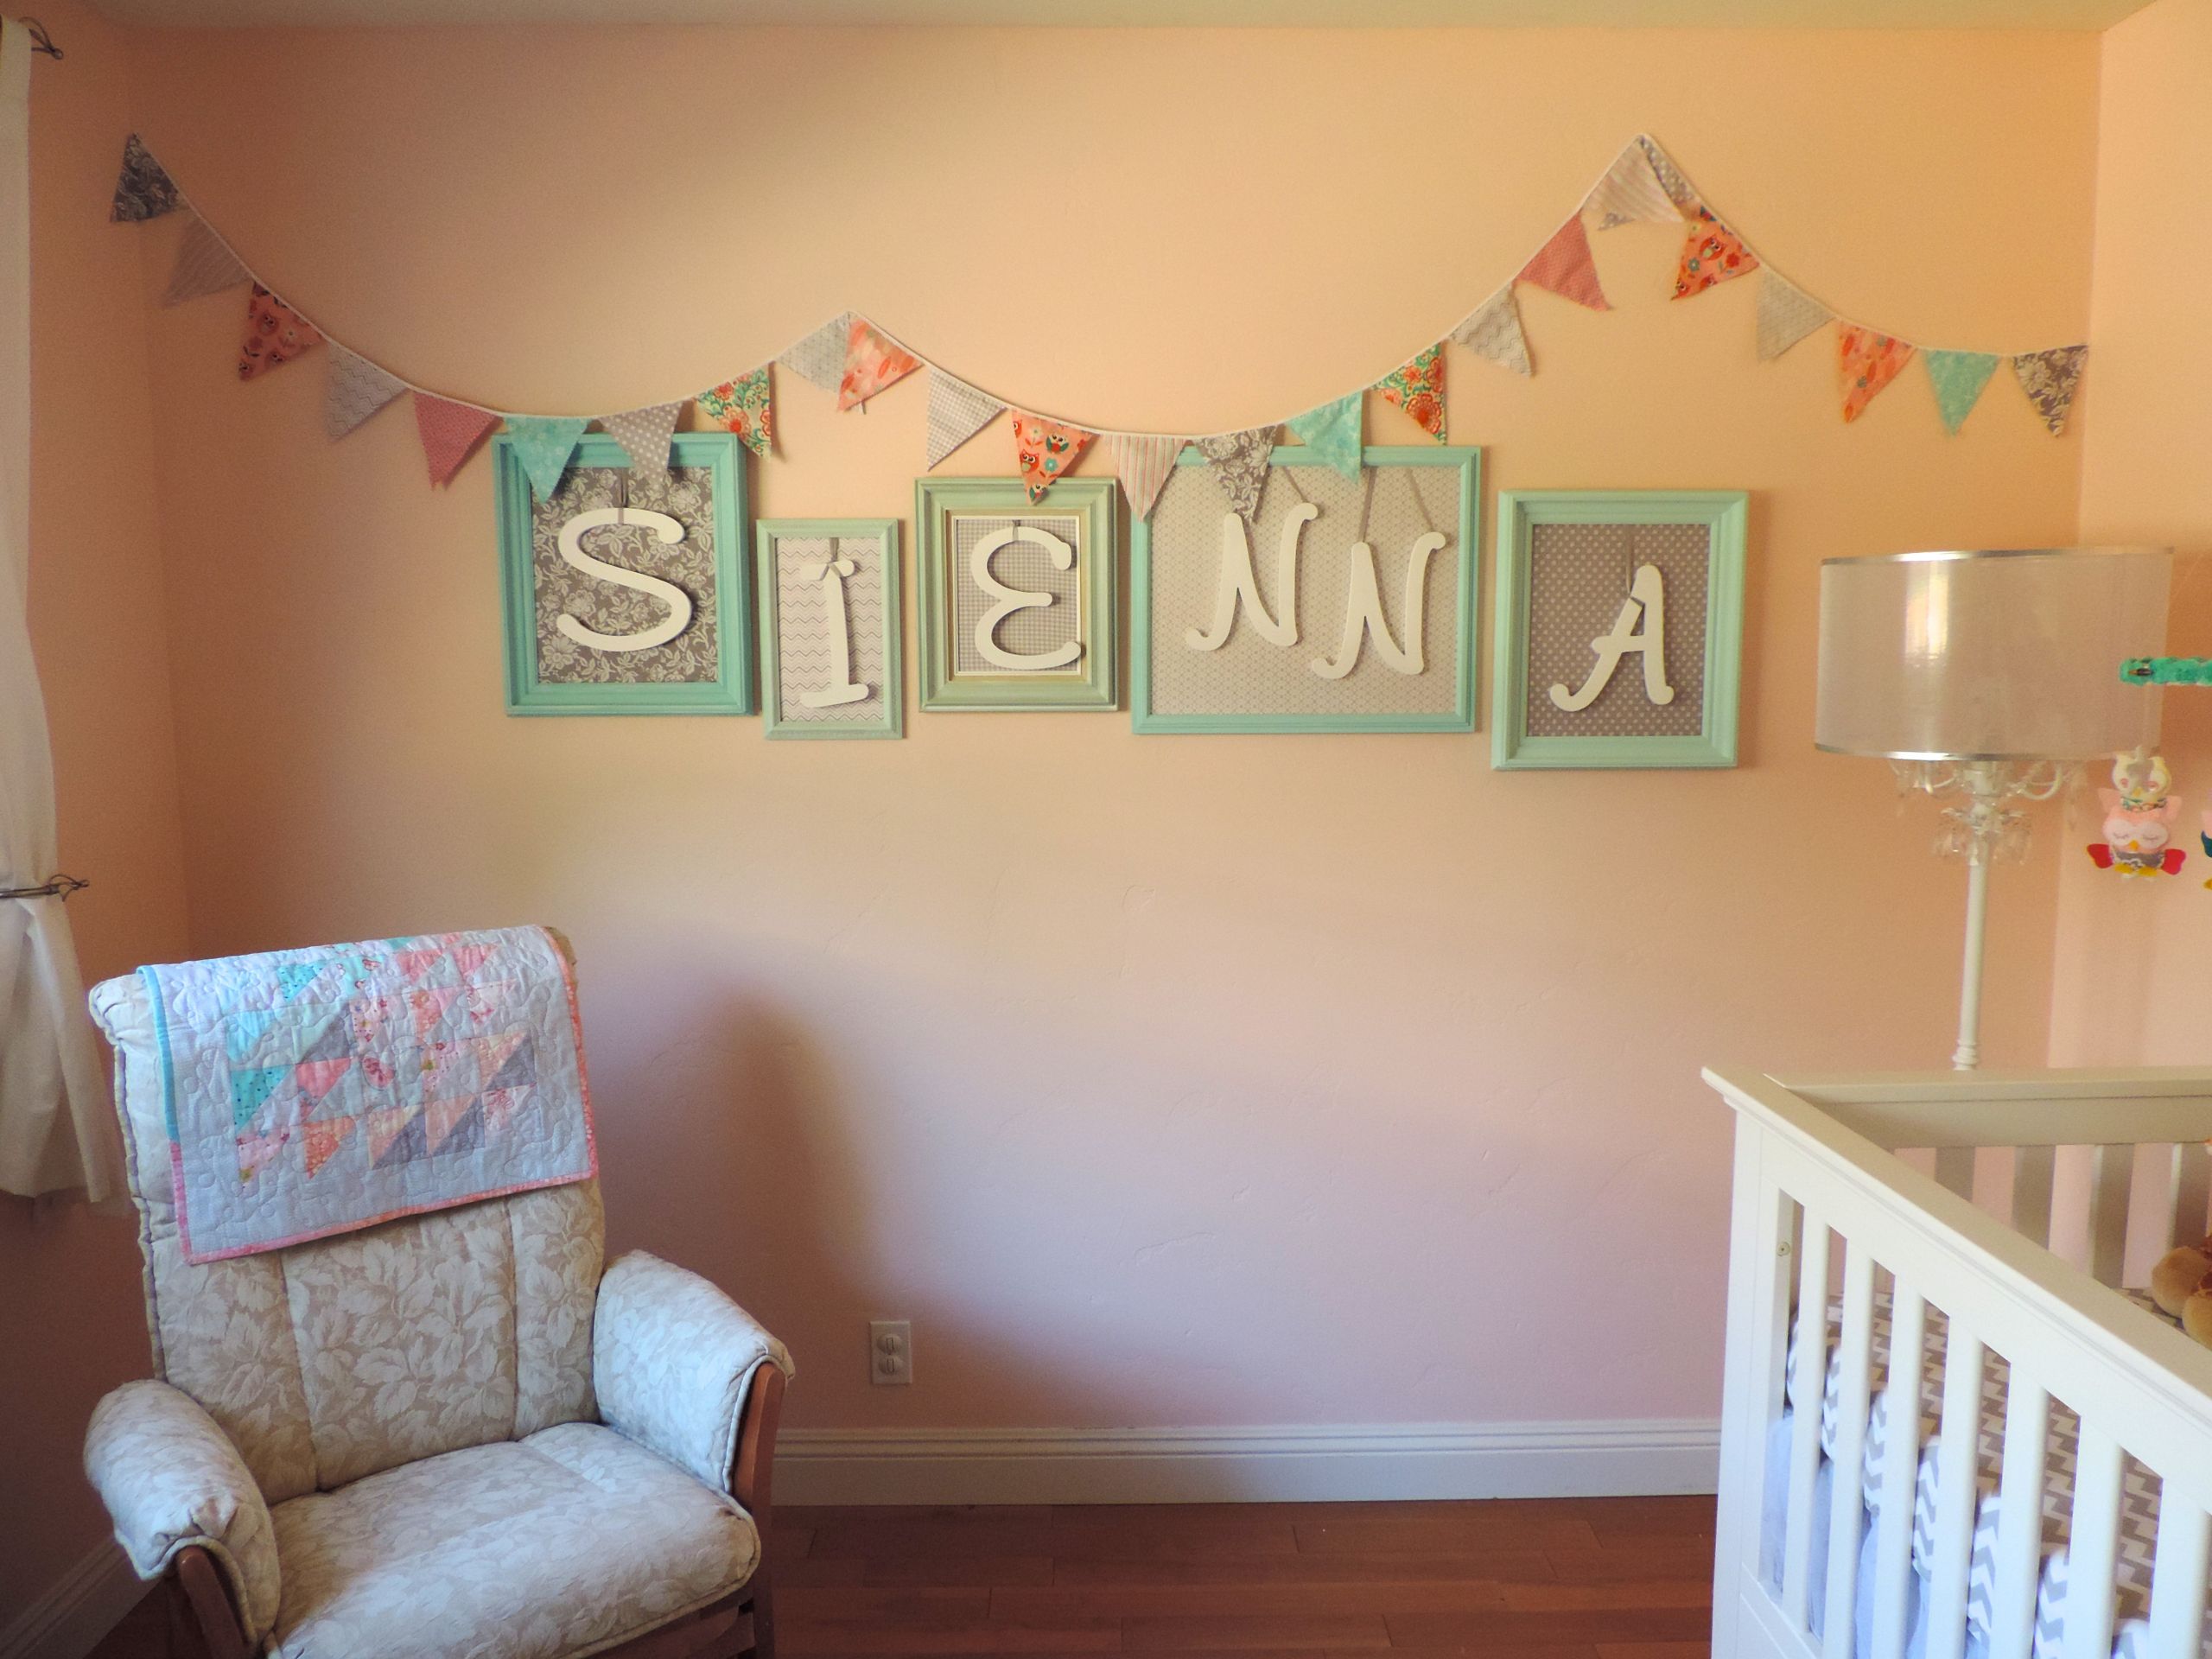 DIY Baby Girl Room Decor
 Our Baby Sienna s DIY Nursery Project Nursery